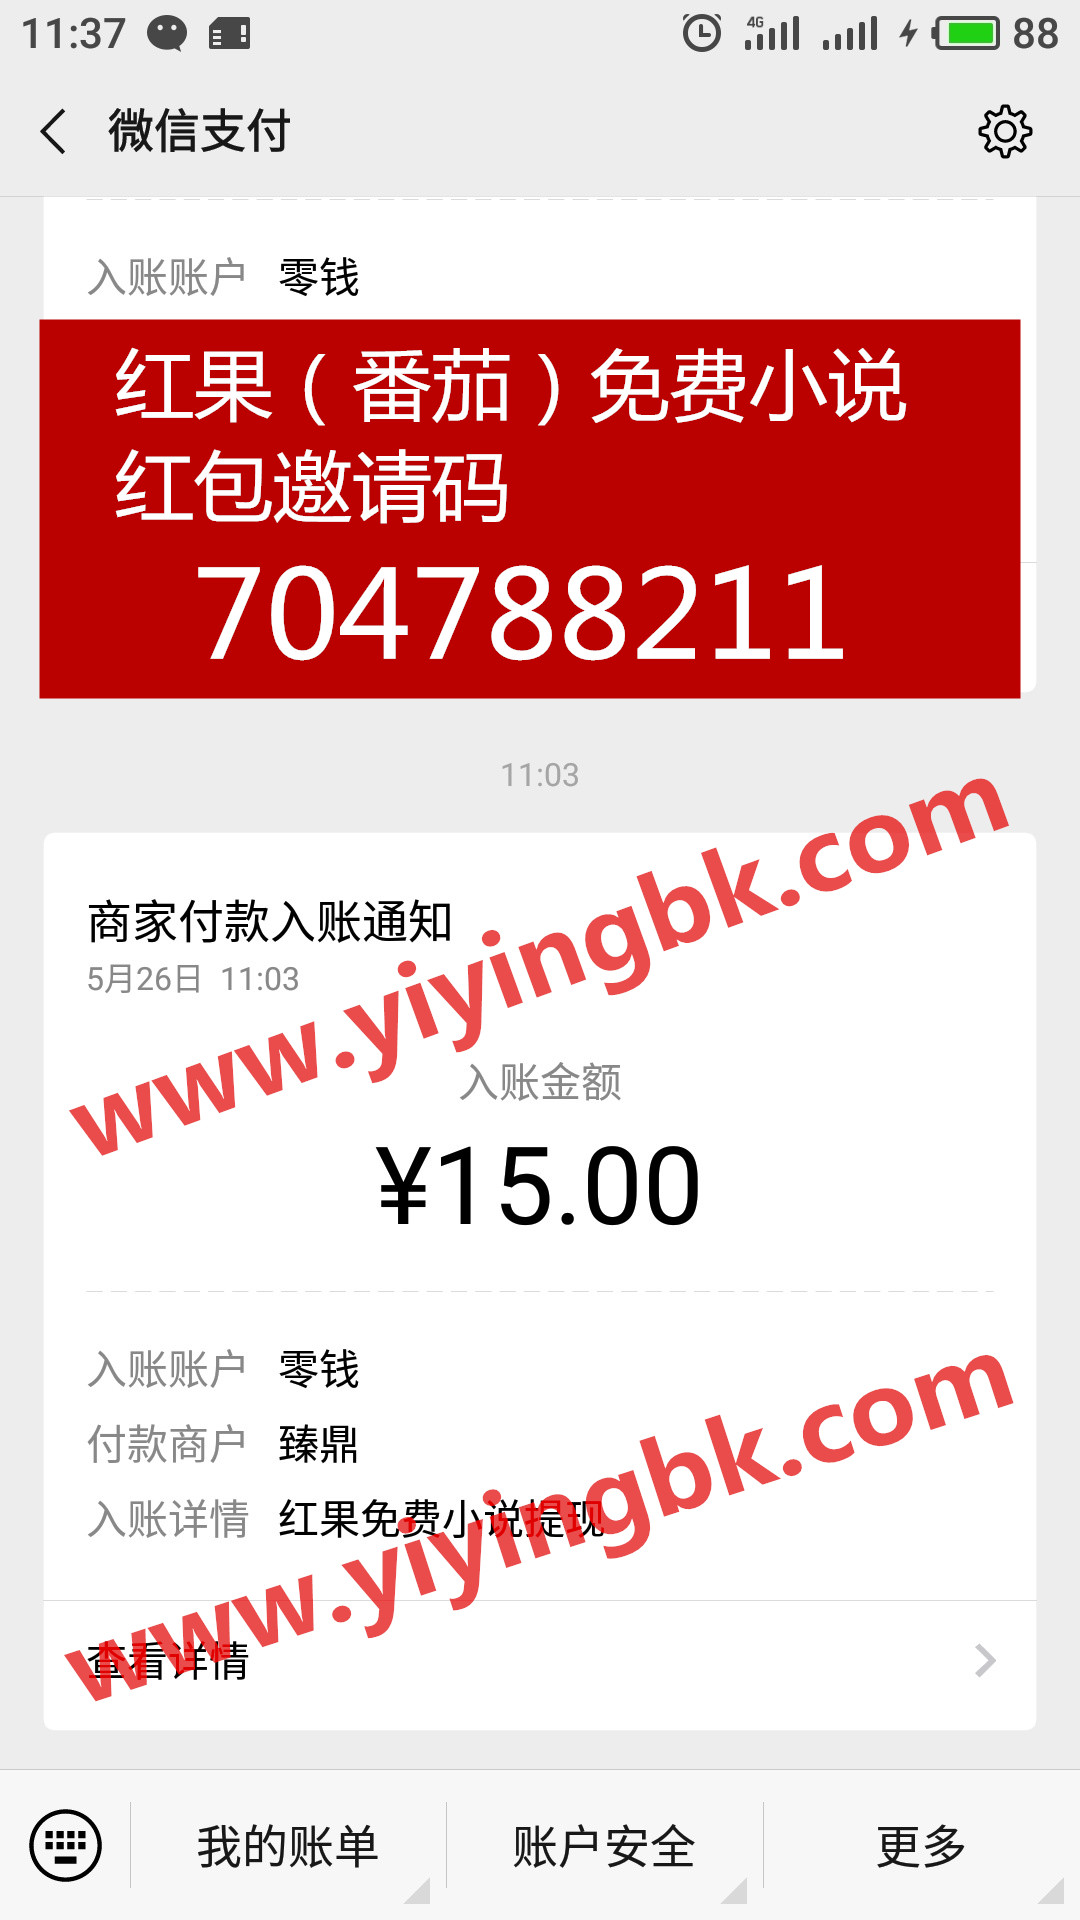 手机免费看小说还能领红包赚零花钱，微信提现15元极速到账，www.yiyingbk.com